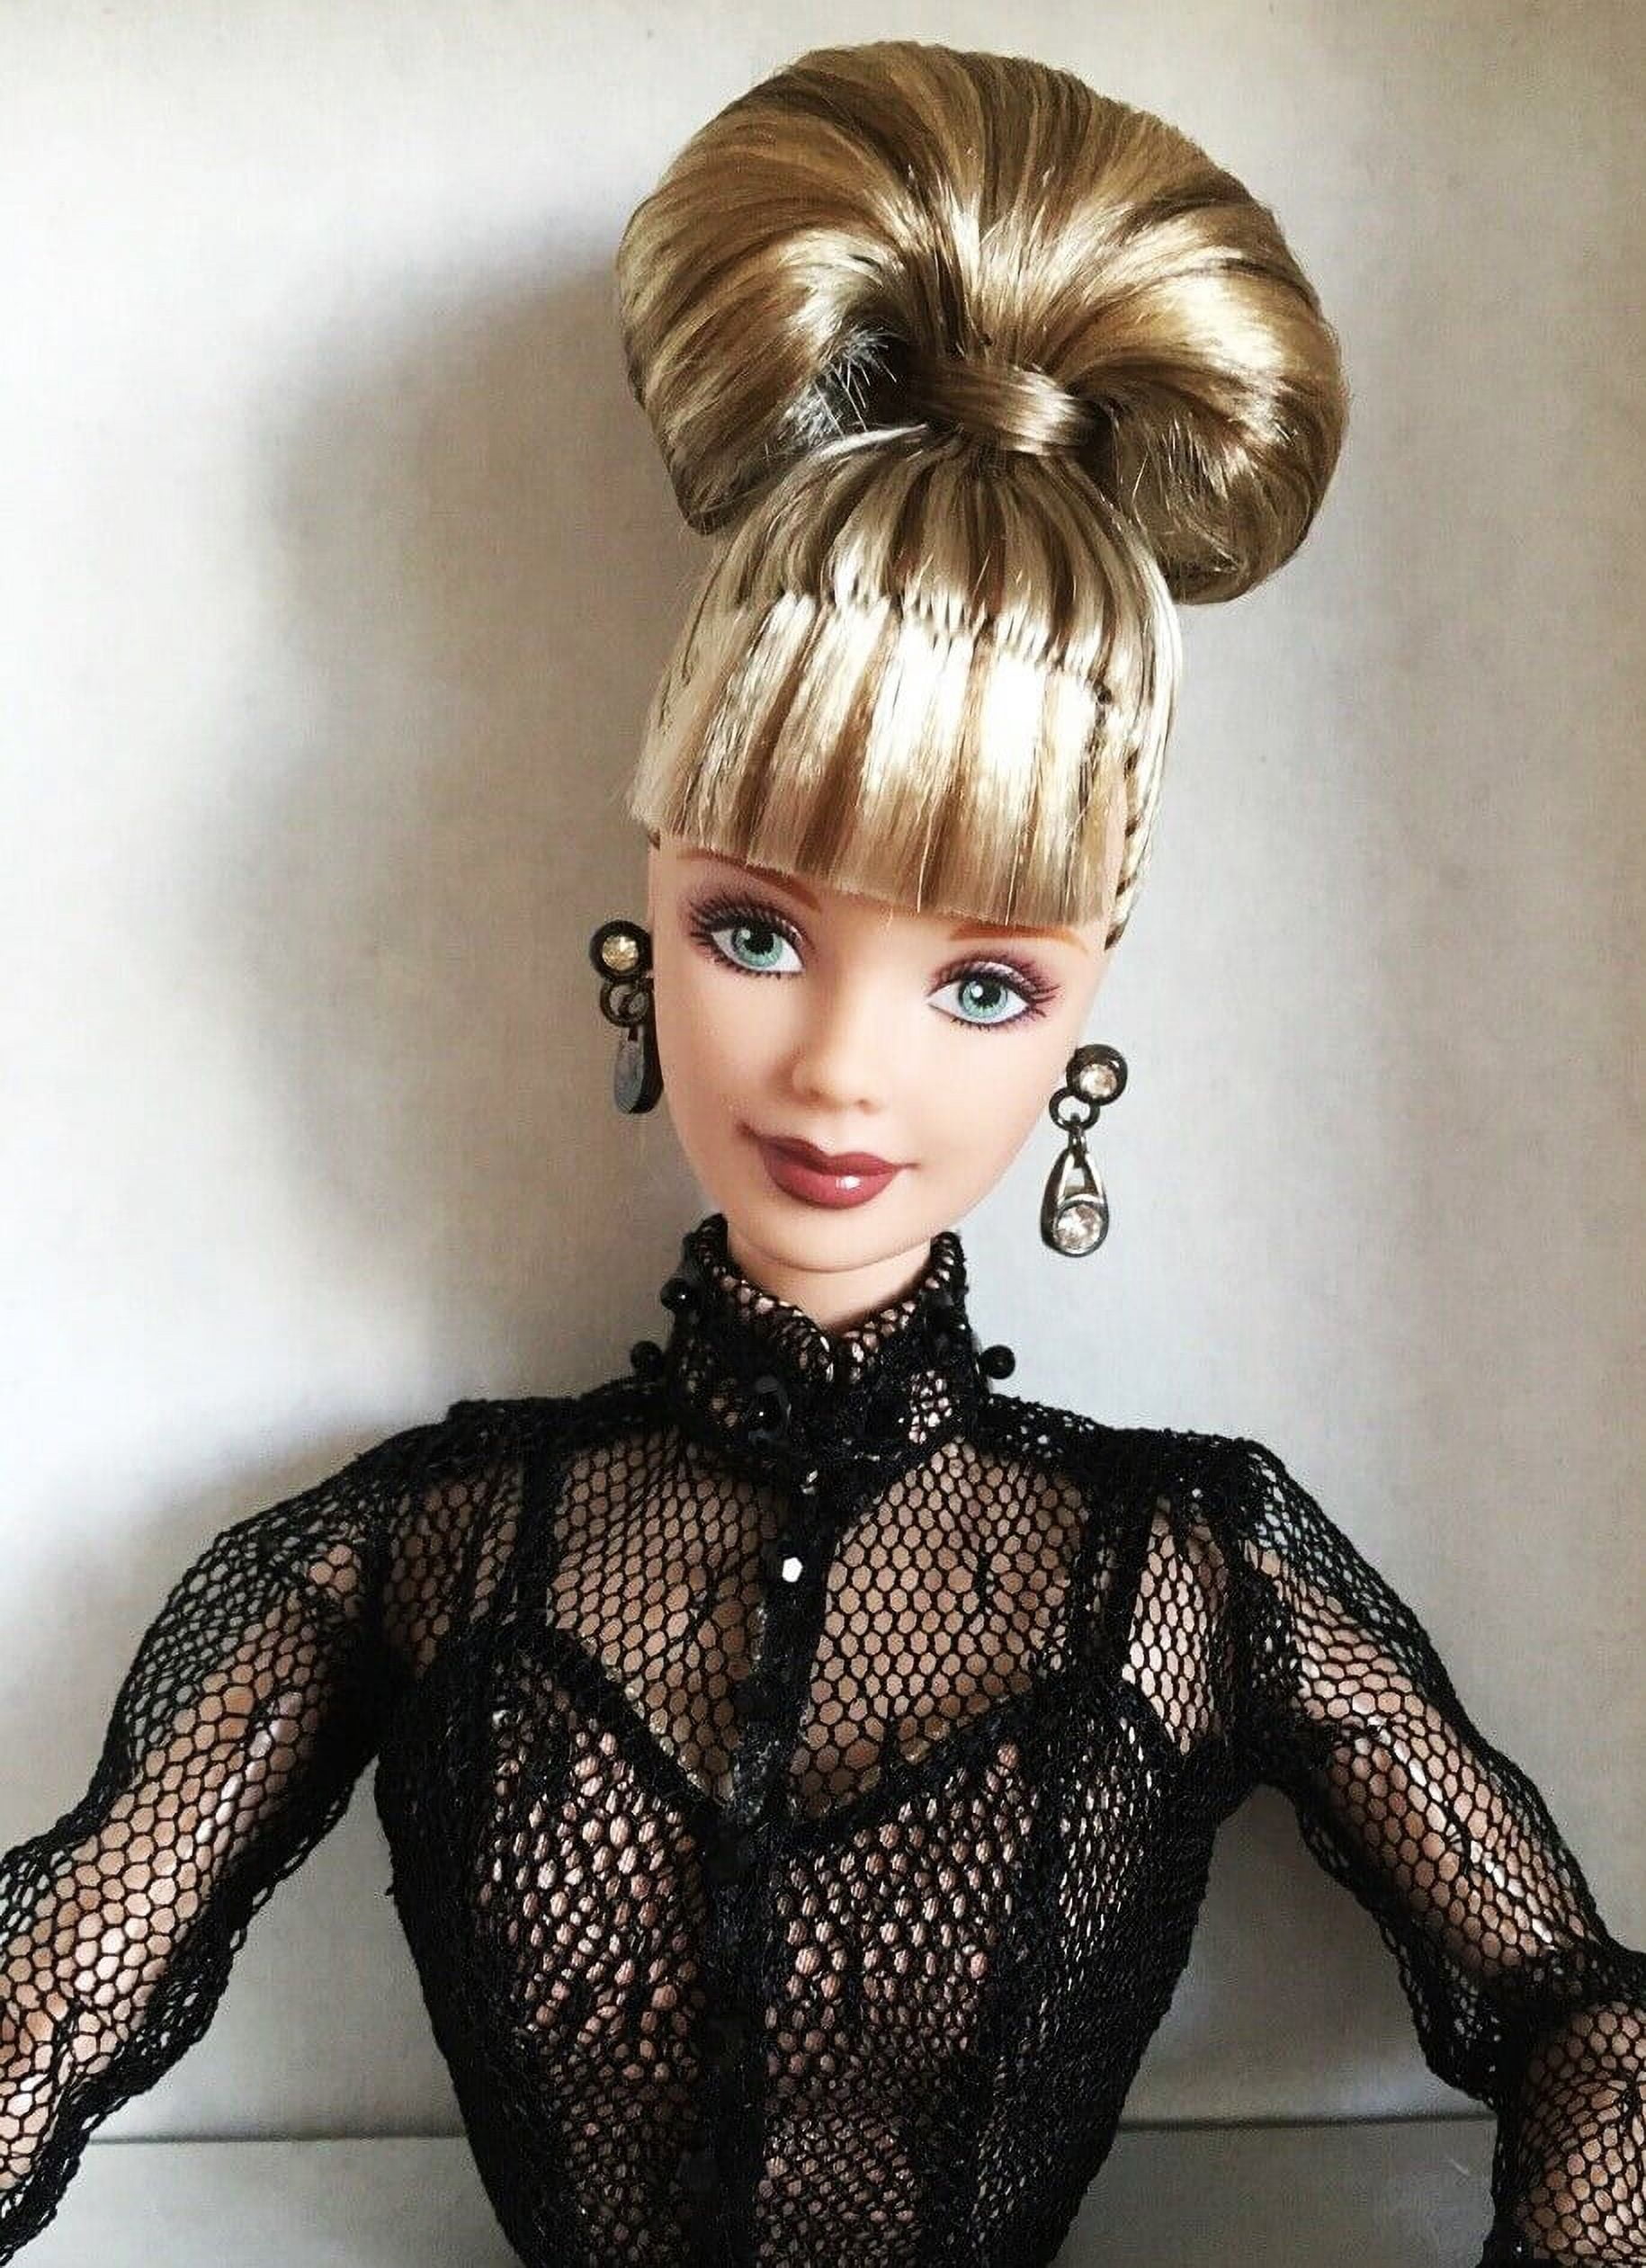 Sheer Illusion Barbie Doll by Nolan Miller 1998 Mattel 20662